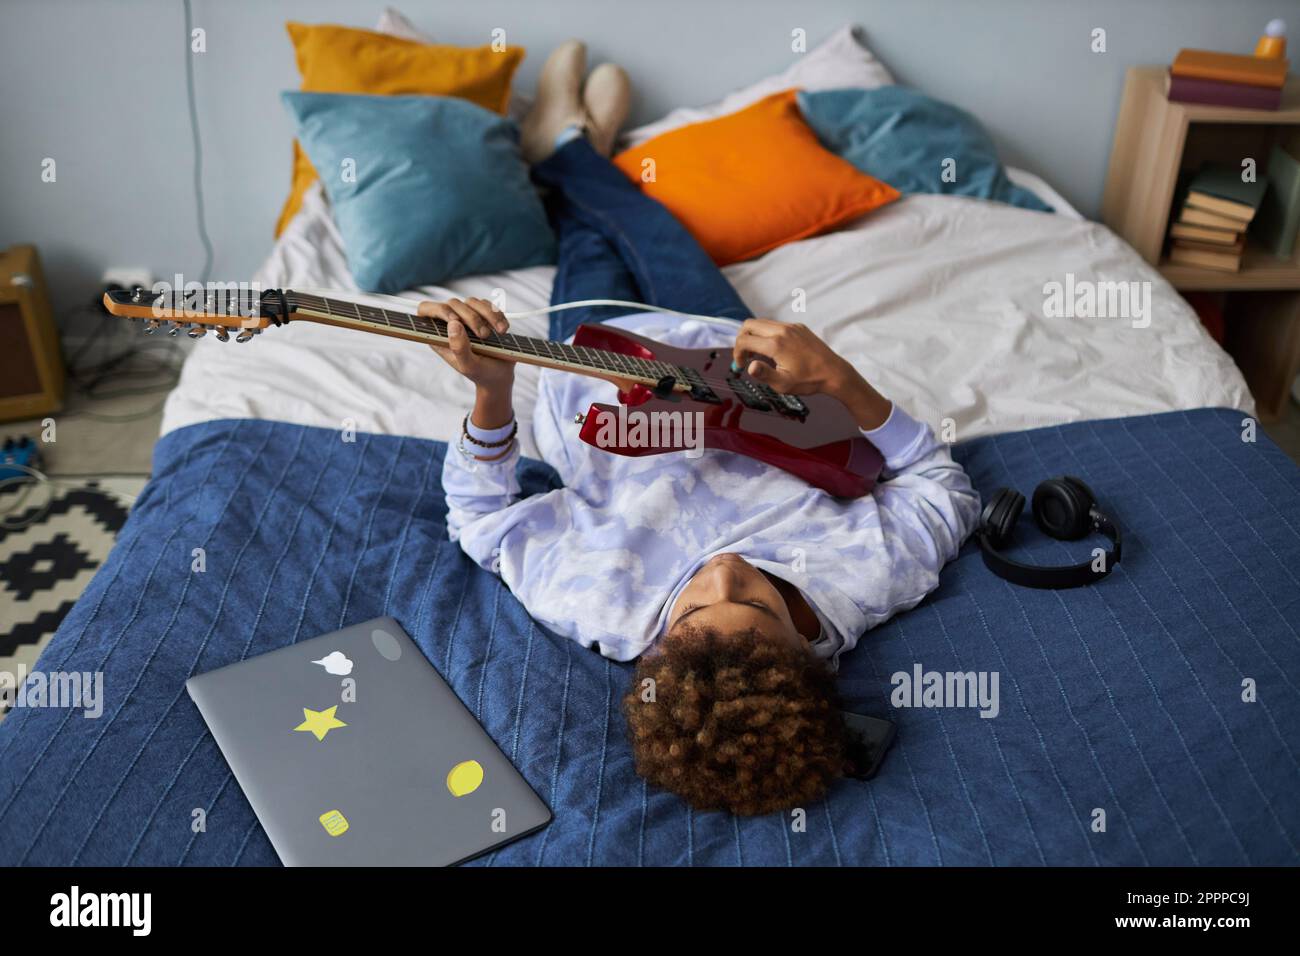 Entspannter afroamerikanischer Teenager, der nach der Schule auf einem bequemen Doppelbett spielt und seine Freizeit genießt Stockfoto